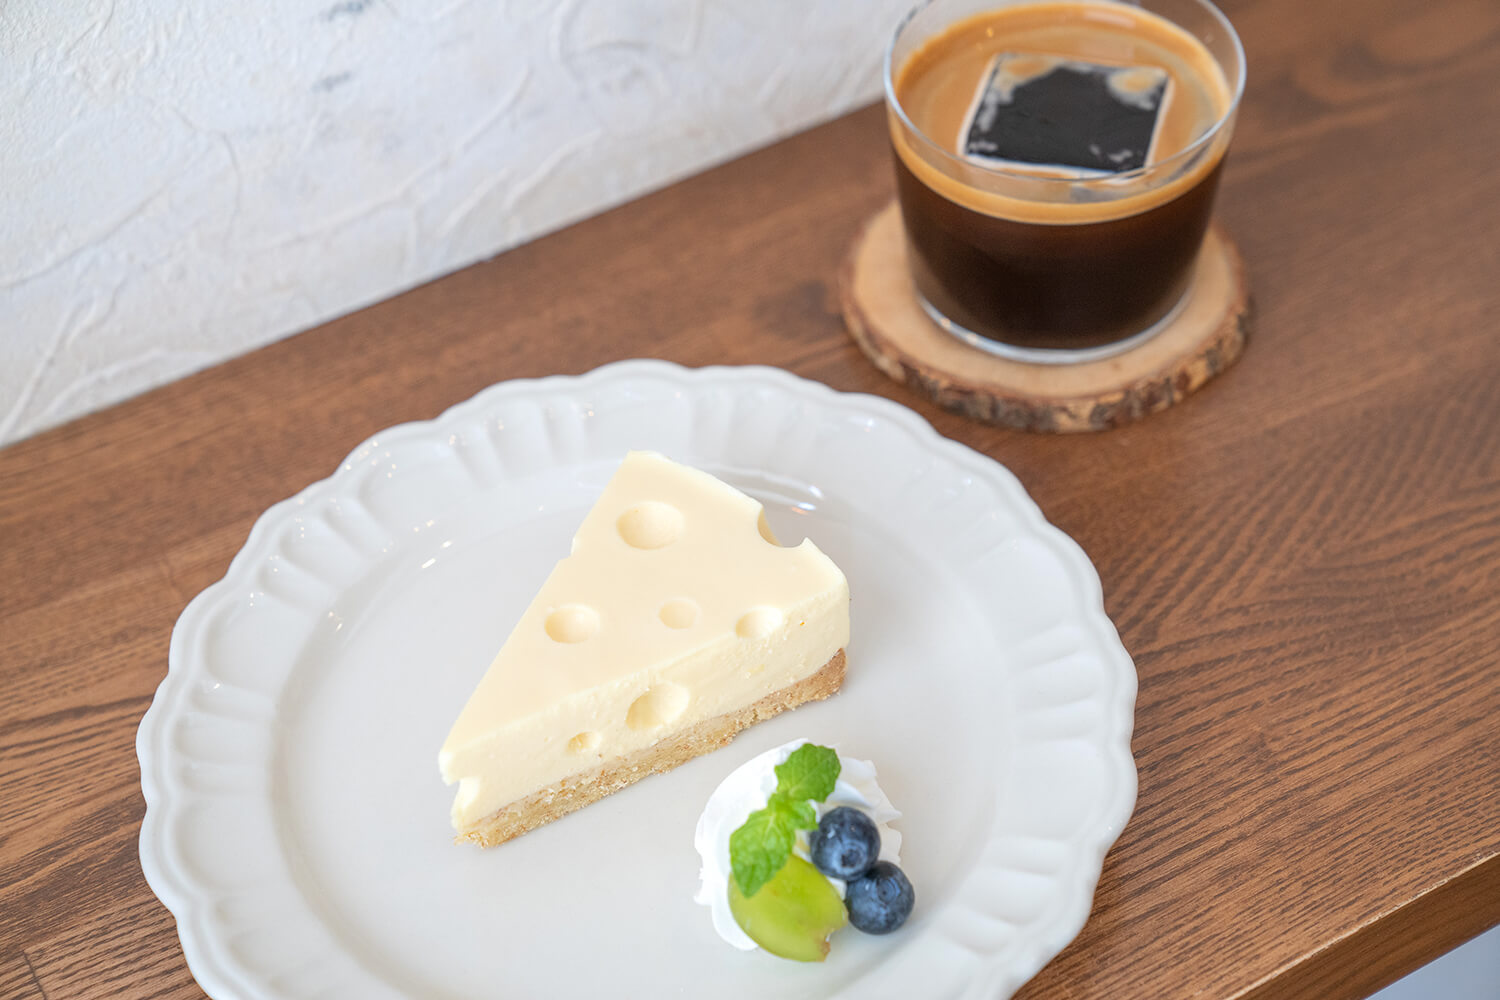 「ケサパサのレアチーズケーキ」600円、「ロングブラック」550円